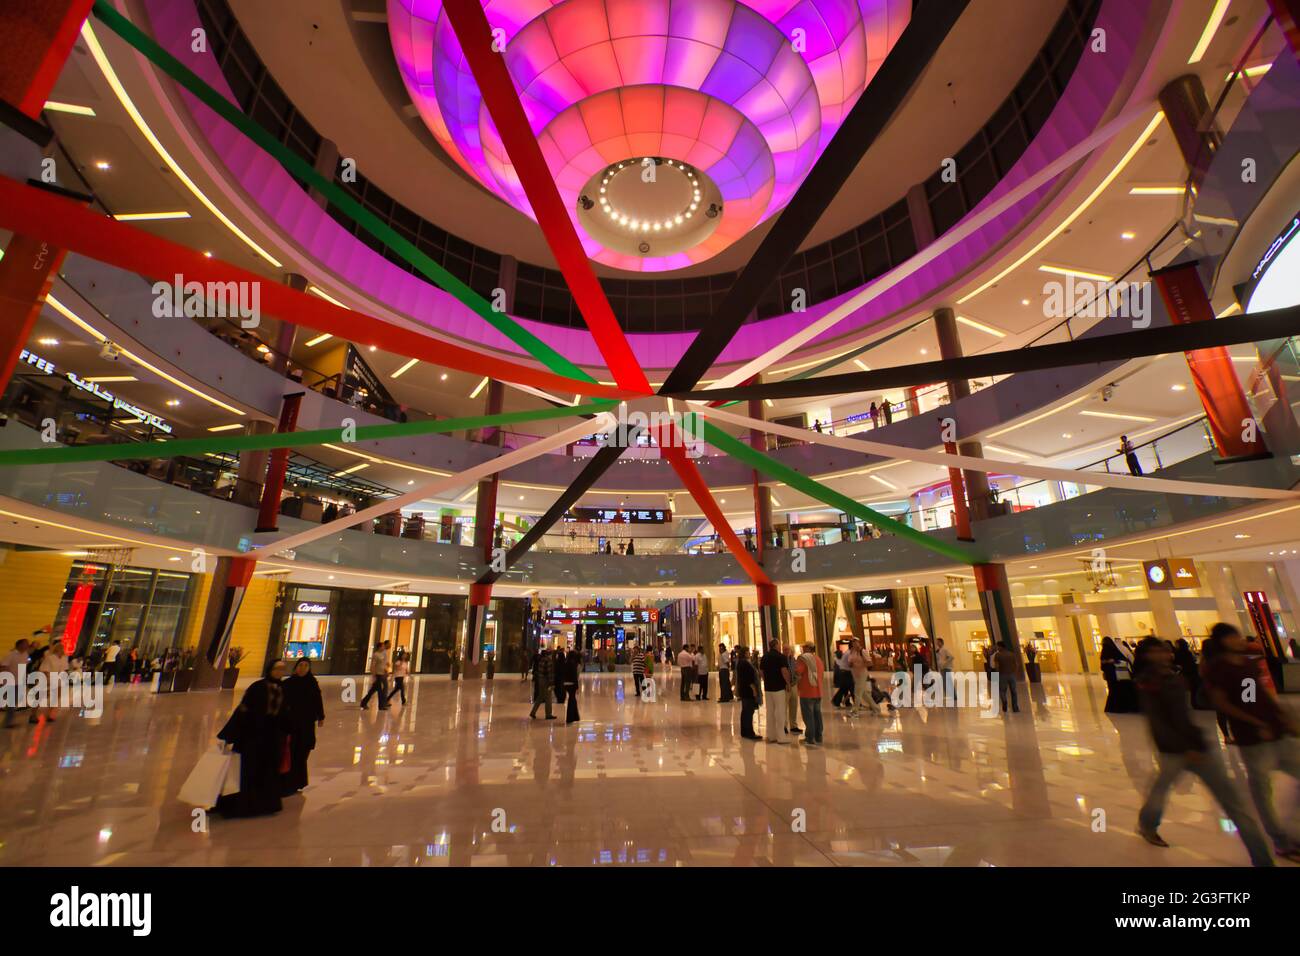 Modernes Interieur eines Einkaufszentrums in Dubai, den Vereinigten Arabischen Emiraten, in dem Menschen herumlaufen Stockfoto